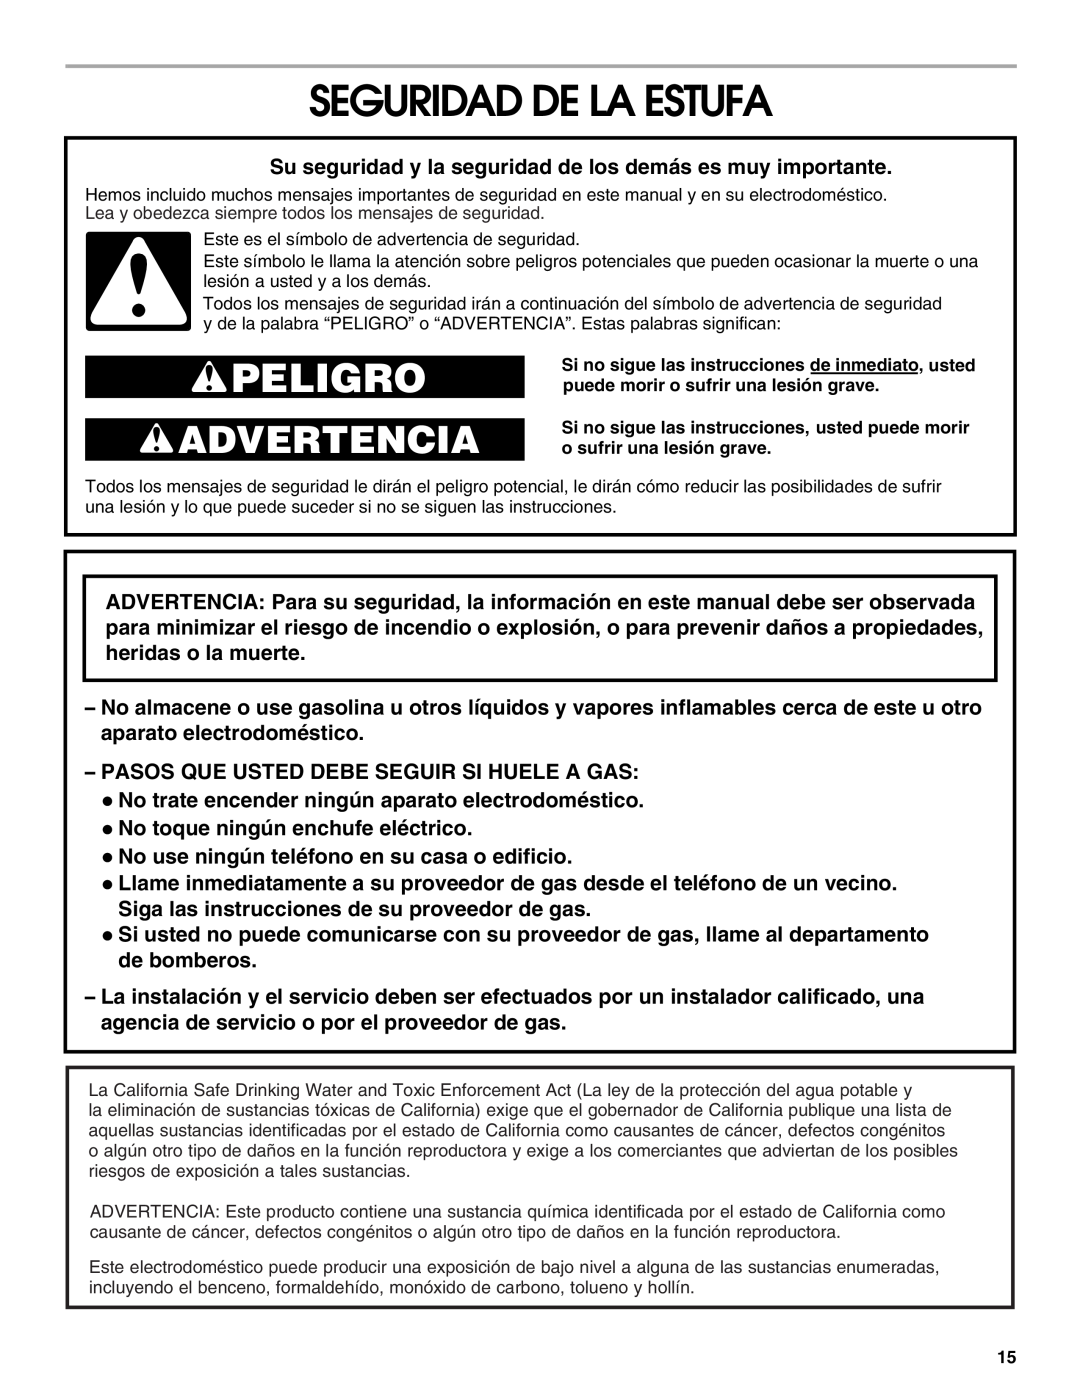 Whirlpool TGP305RV1 manual Seguridad De La Estufa, Peligro, Advertencia 